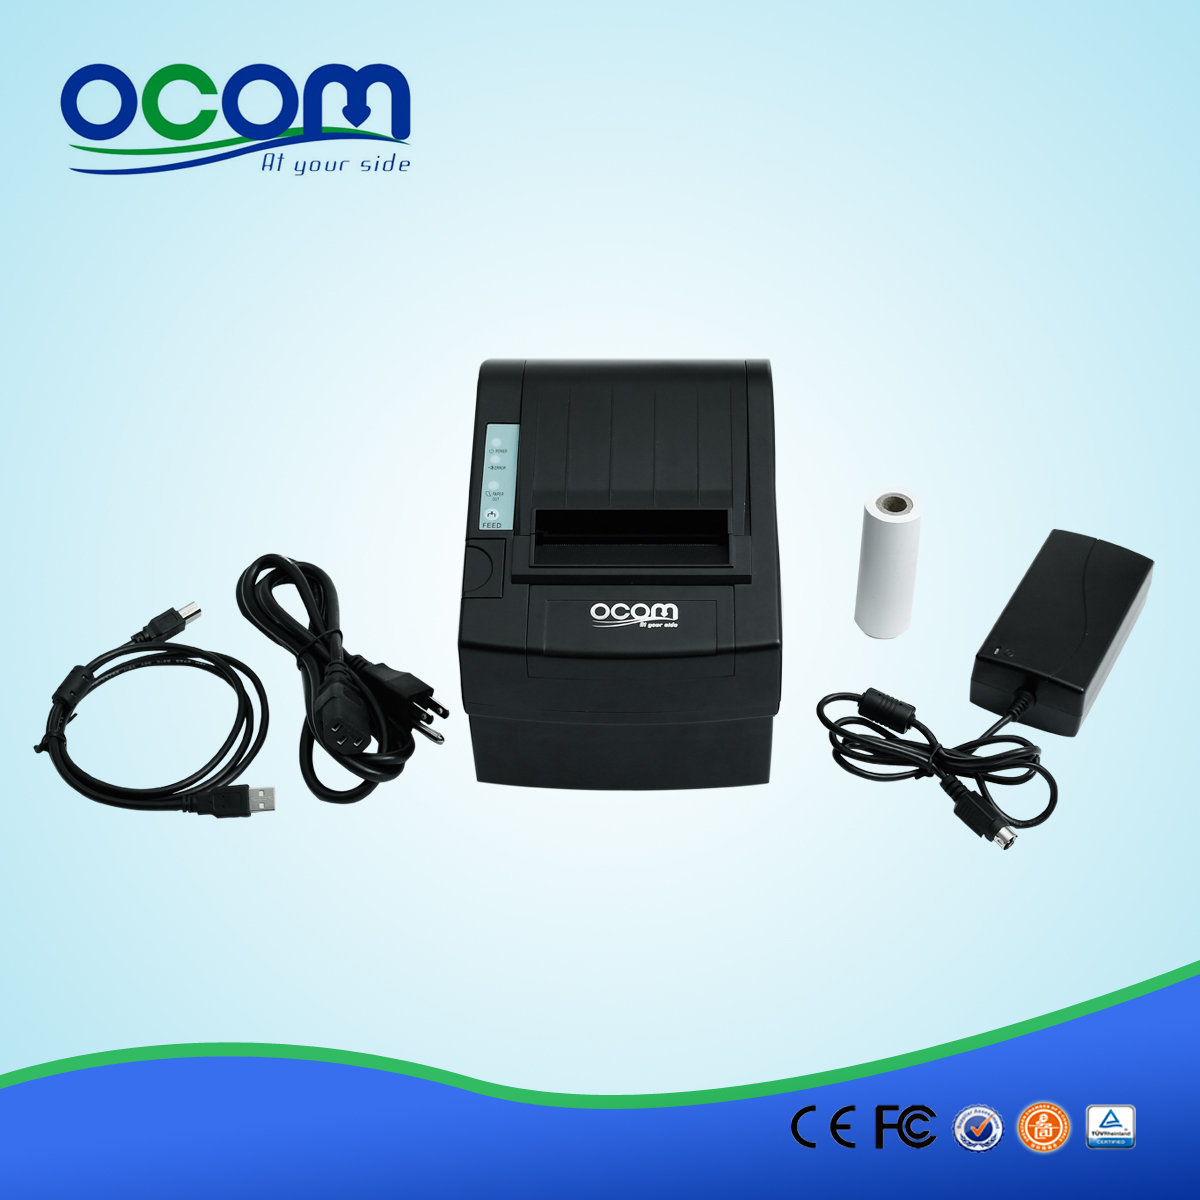 80mm de haute qualité de la réception POS sans fil wifi imprimante-OCPP-806-W